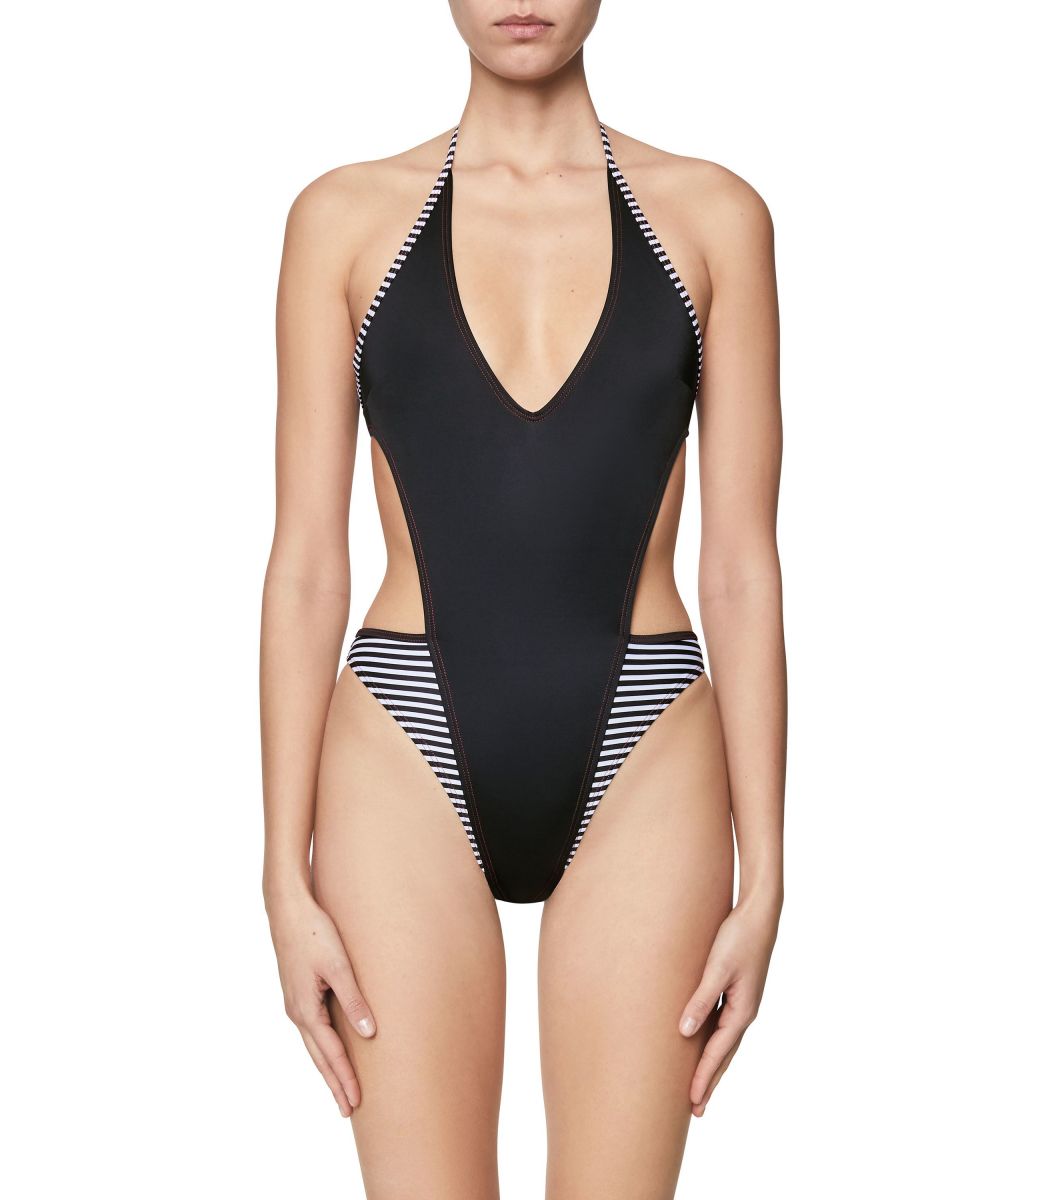  Swimwear DIESEL copy of Diesel Women swimwear body A03977-0IDAA-1